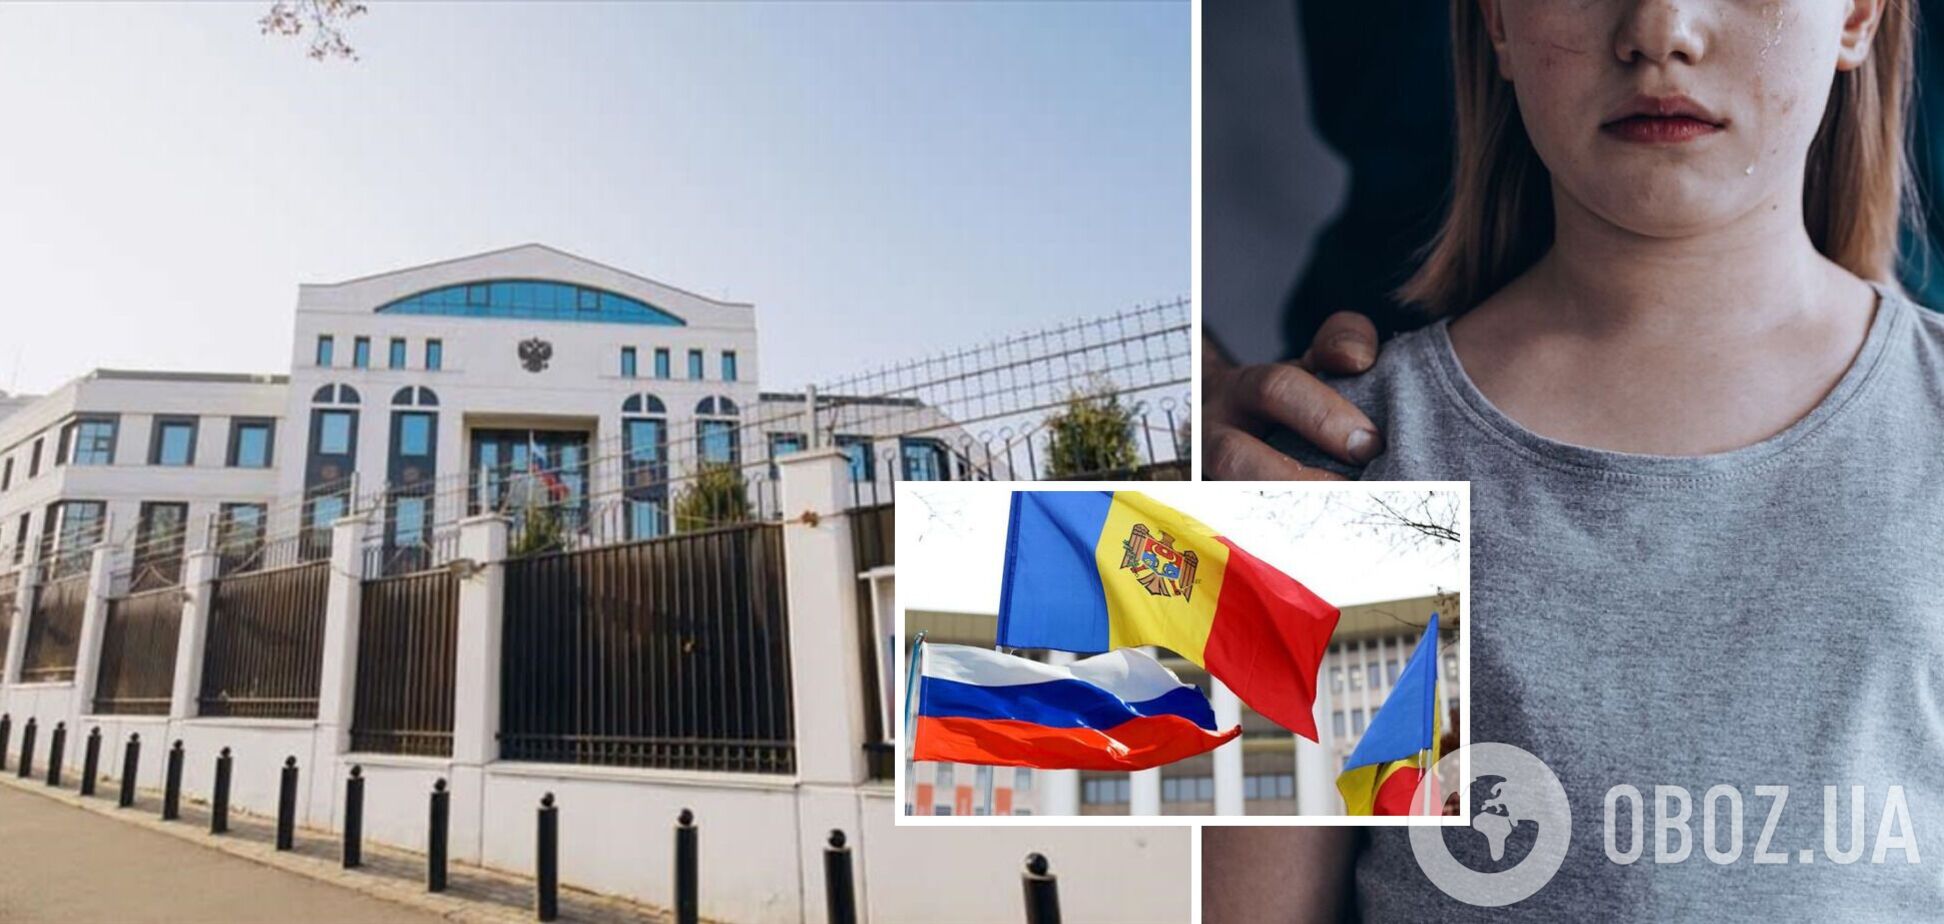  Приставав до дітей своїх колег: співробітника посольства РФ у Молдові звинуватили у сексуальних домаганнях